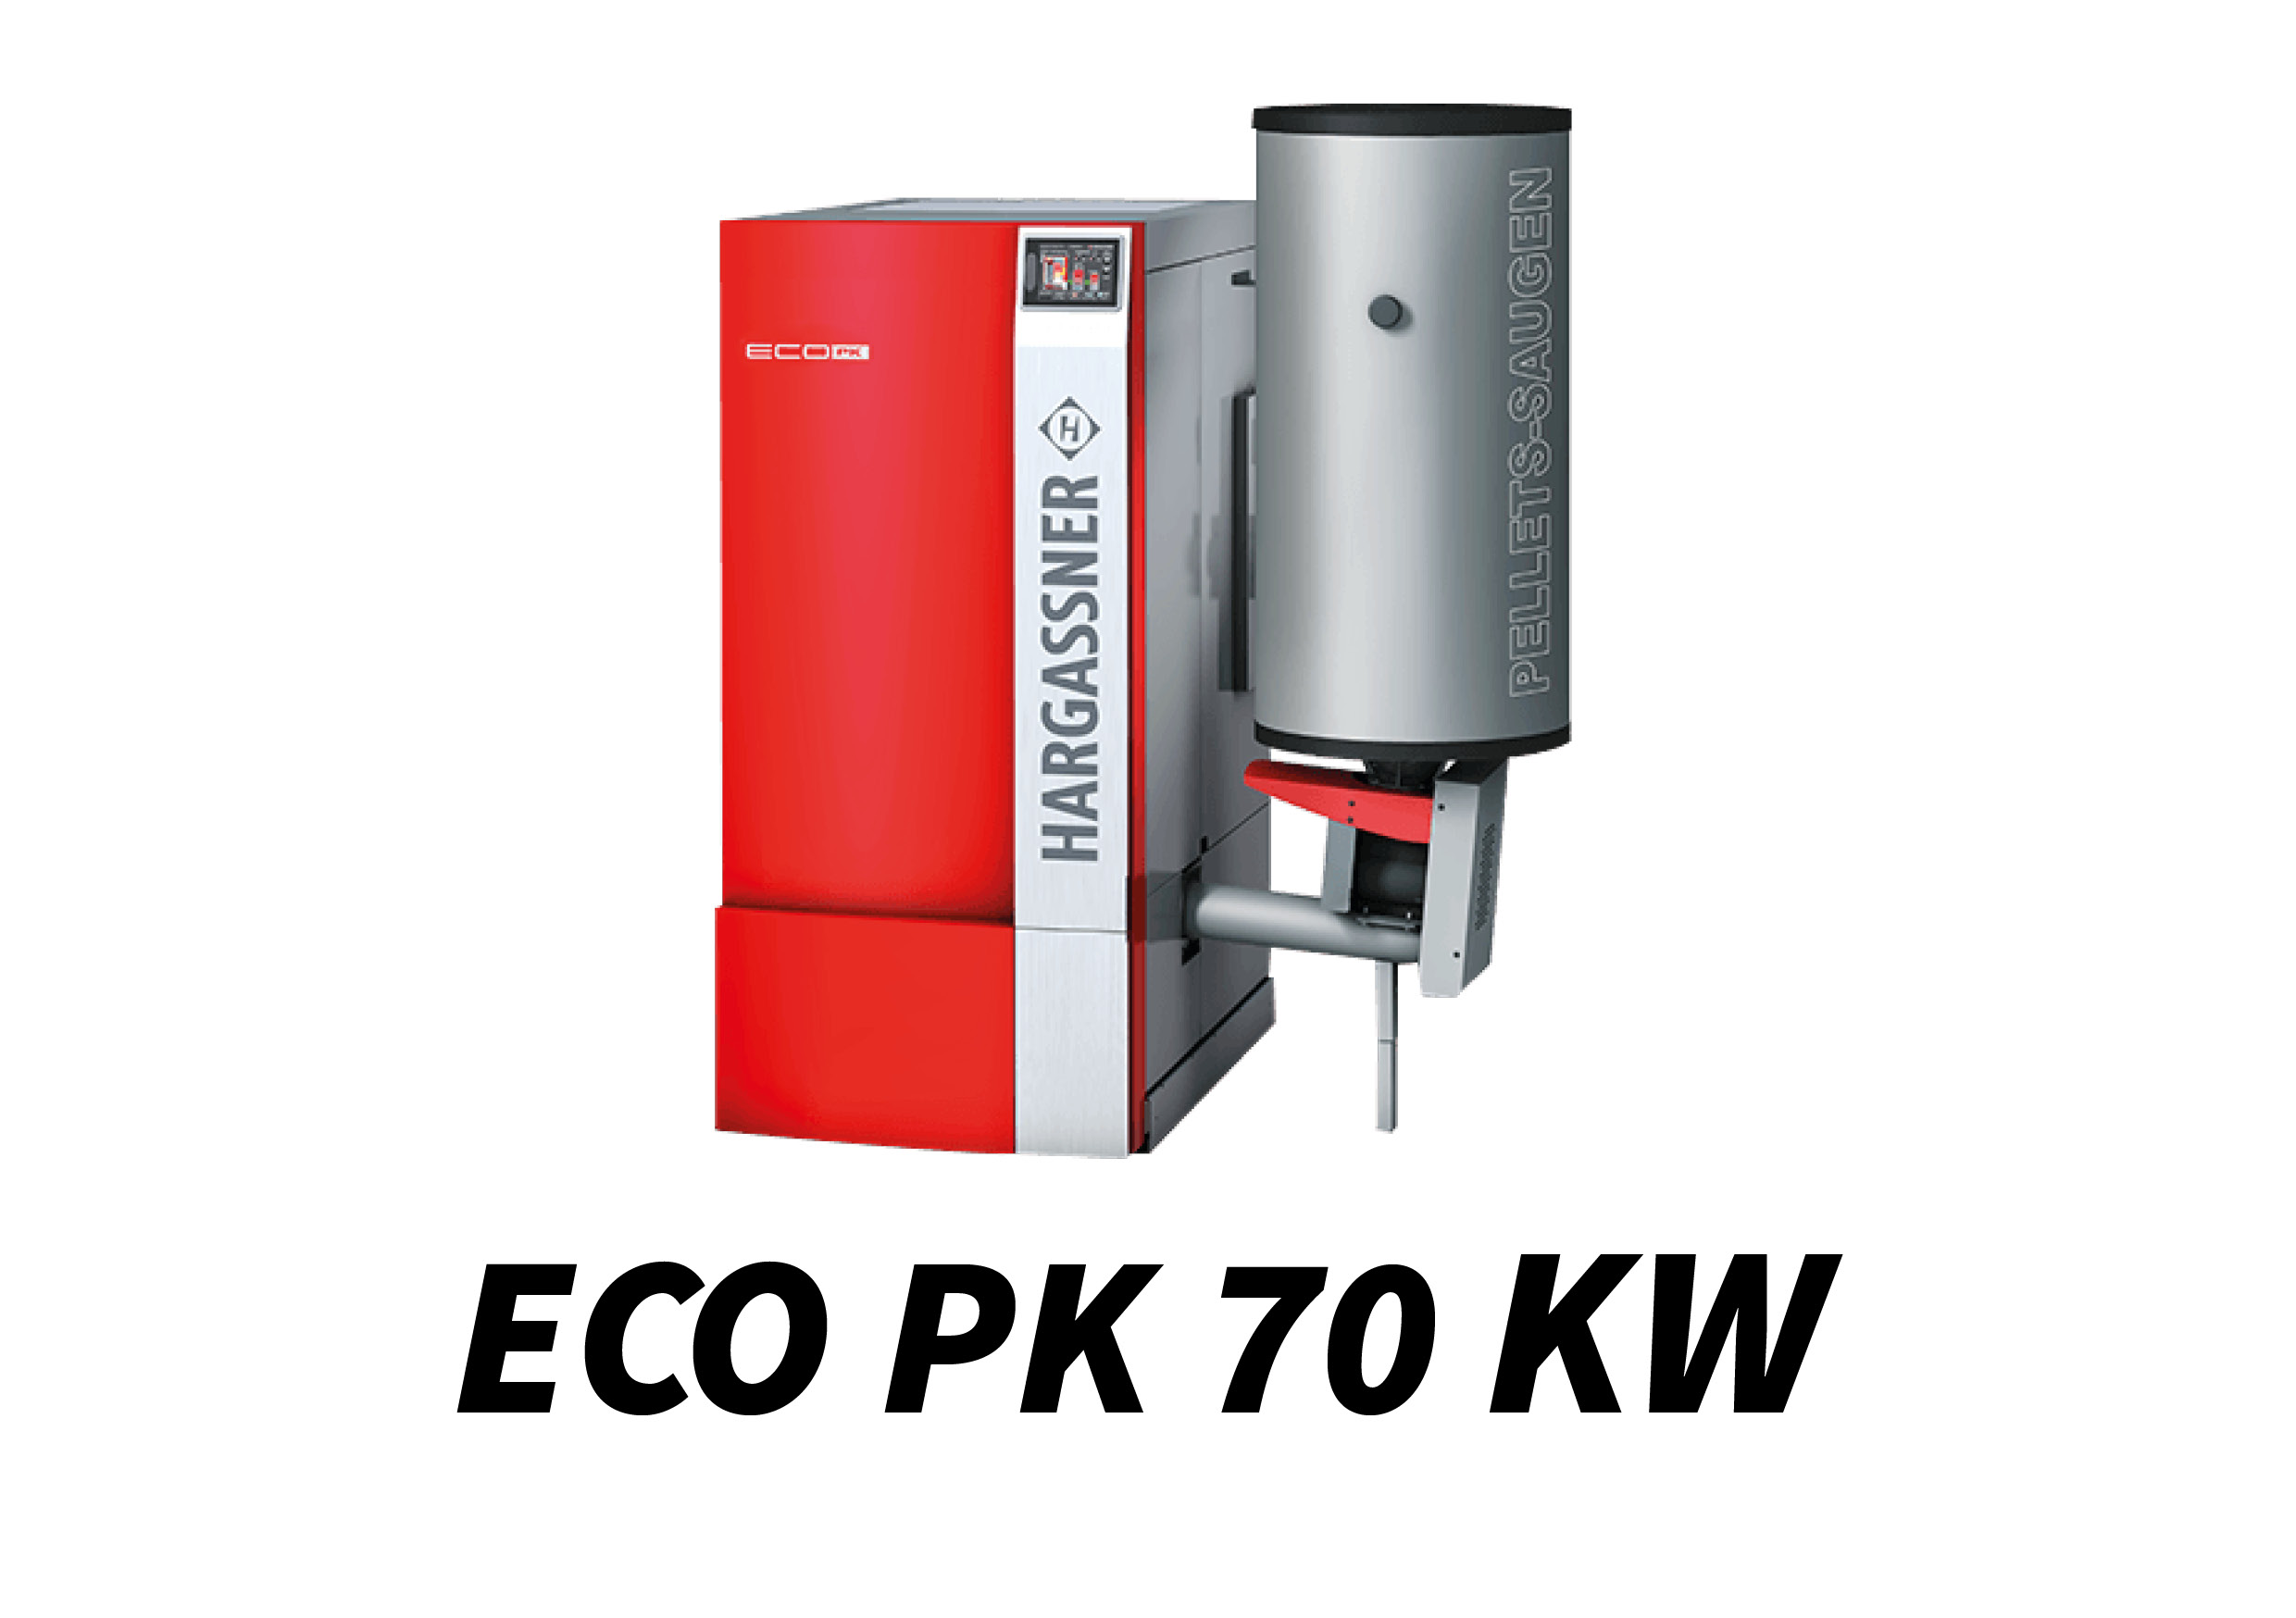 ECO PK 70 kW